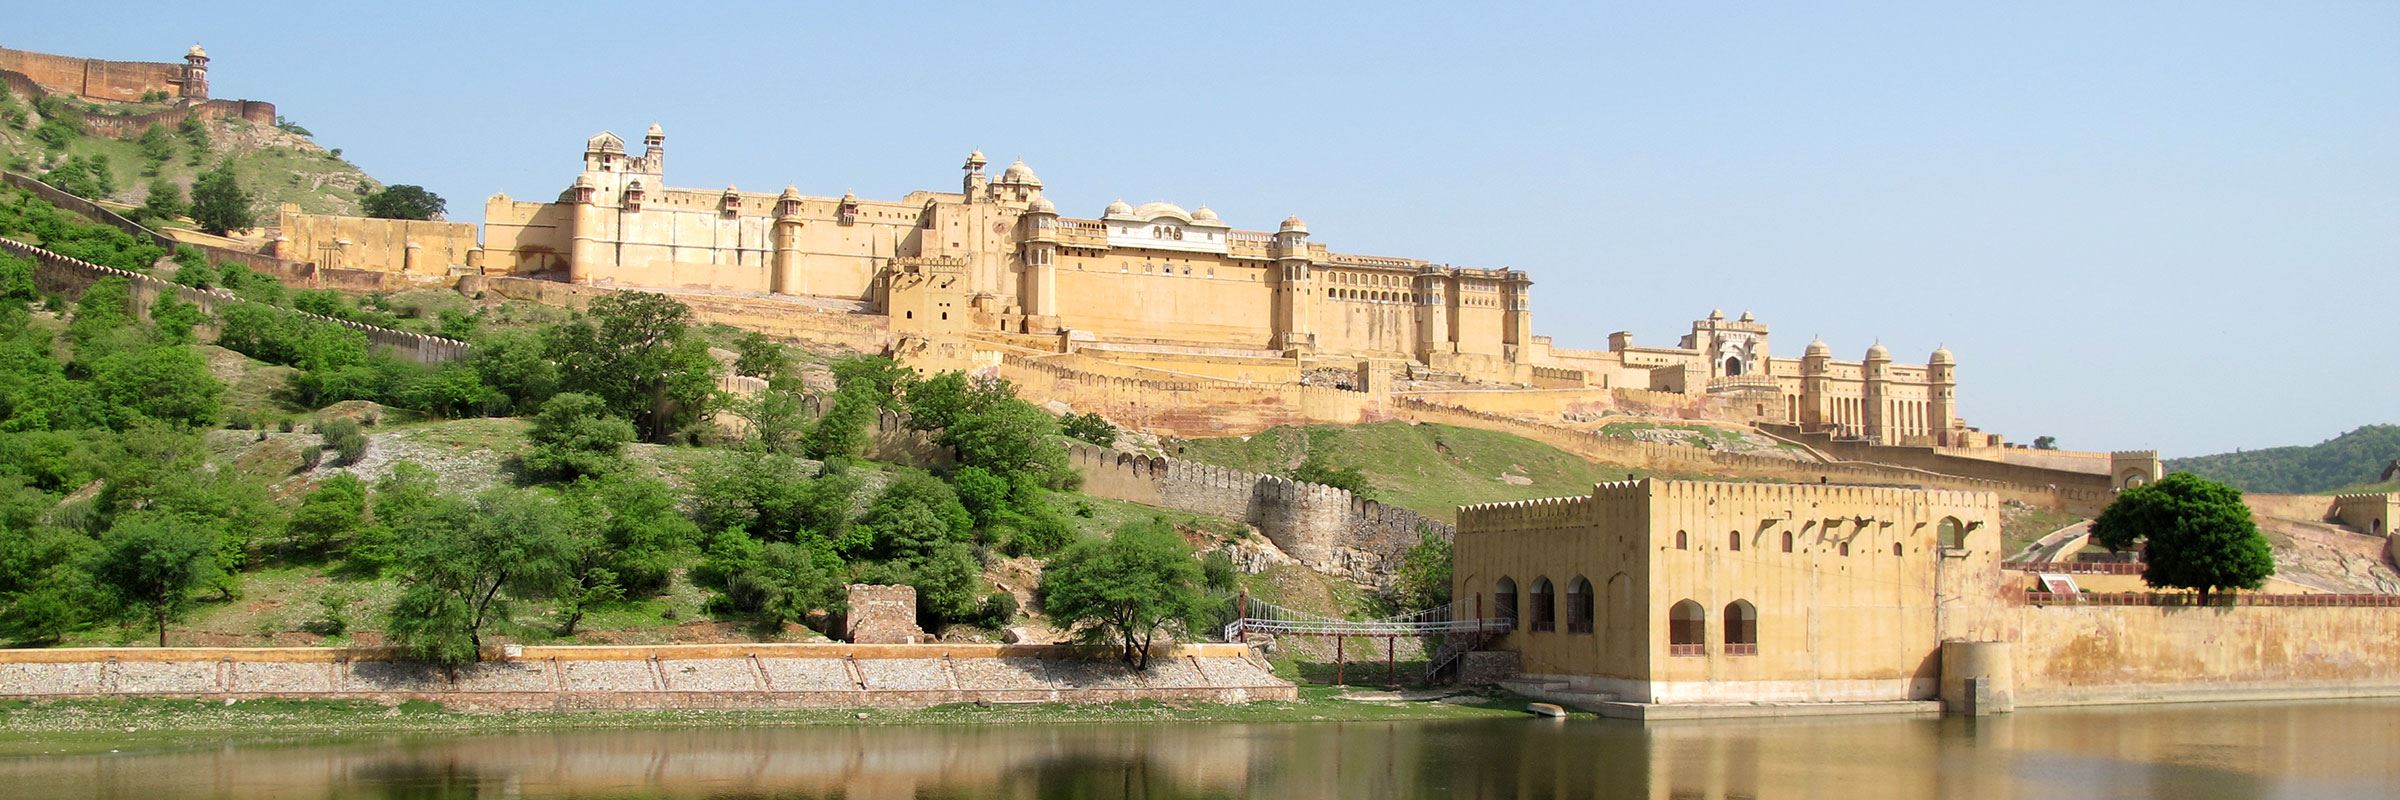 Bits from my lil trip to Jaipur, Rajasthan 🫶🏼 #traveldiaries #jaipur # rajasthan #india #desifeels | Instagram